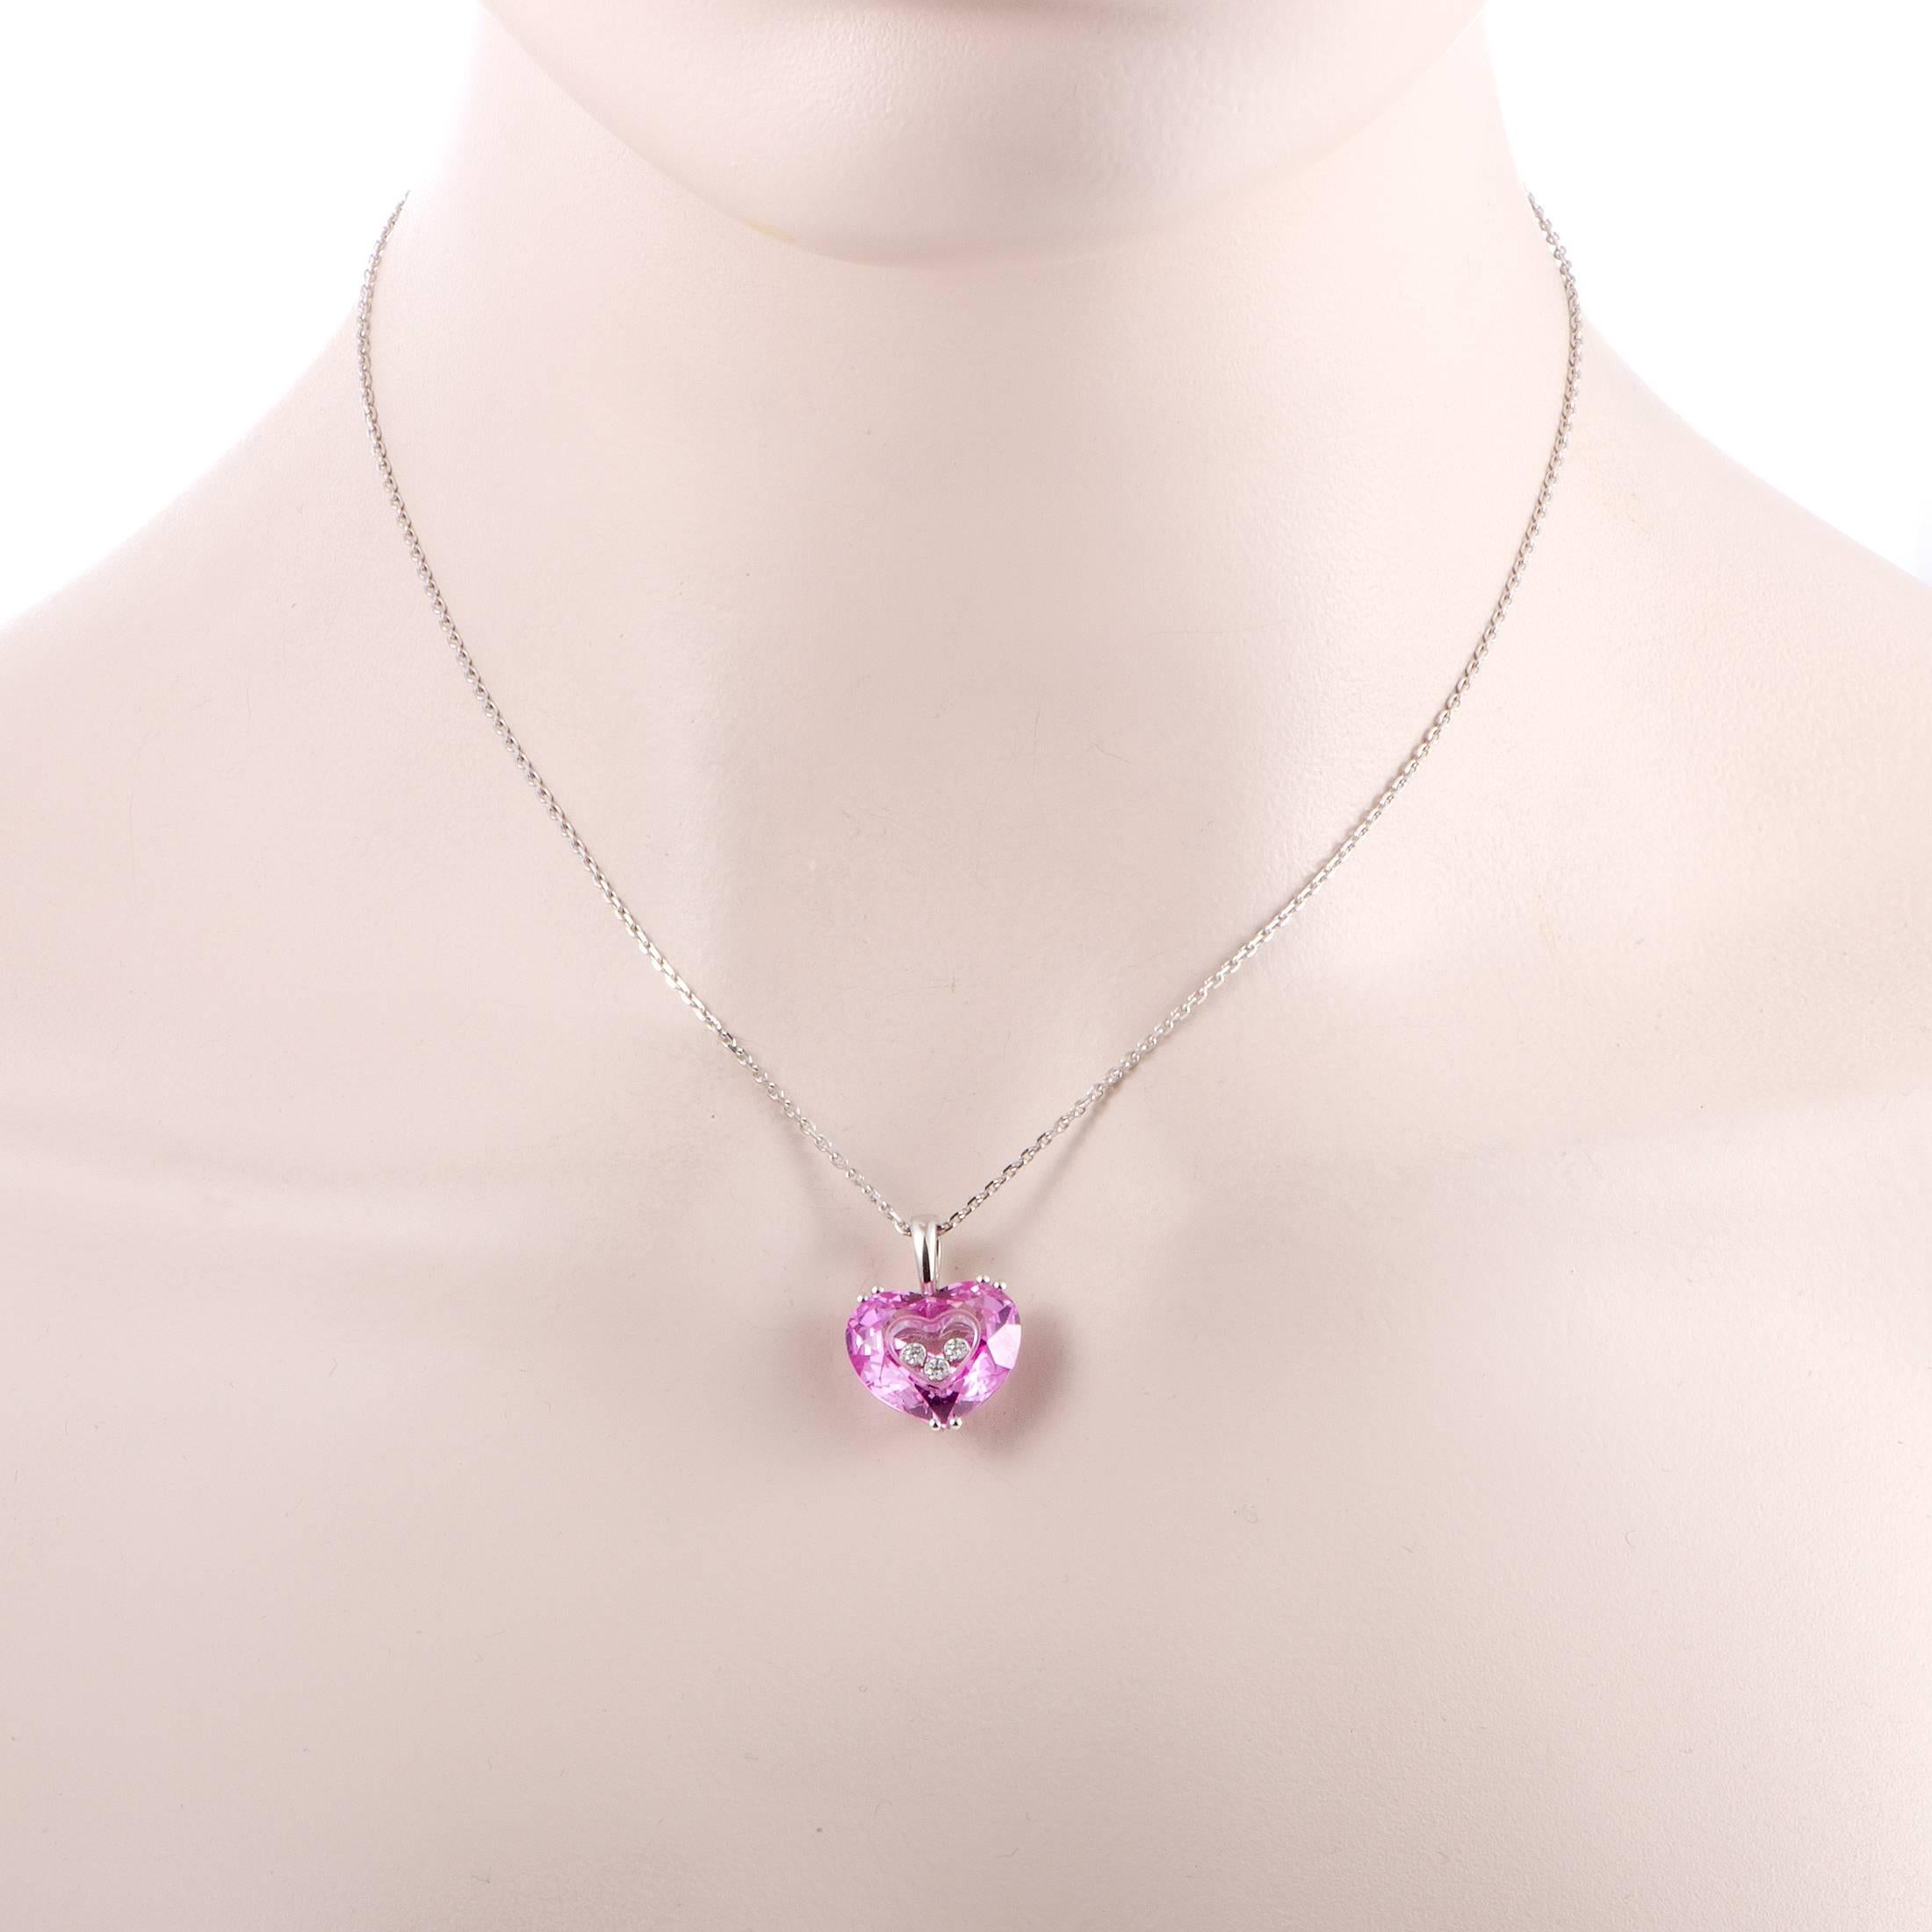 Dieses bemerkenswerte Collier von Chopard kombiniert einen verführerischen Herzanhänger in wunderschönem rosa Kristall mit den ikonischen:: schwebenden Diamanten der Marke und besticht durch seine feminine Ausstrahlung. Die Halskette ist aus edlem